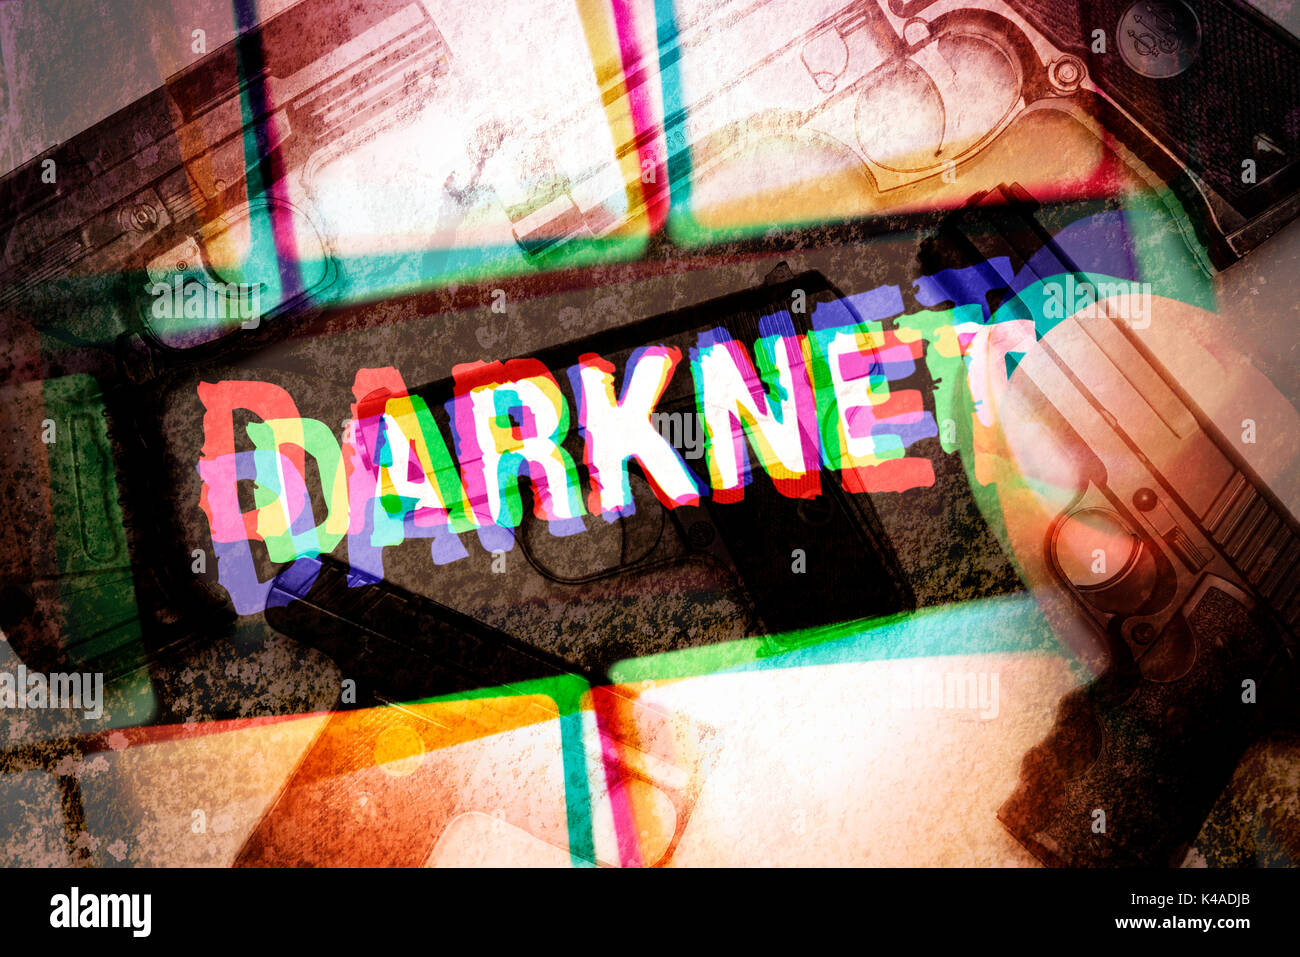 Darknet Website For Drugs